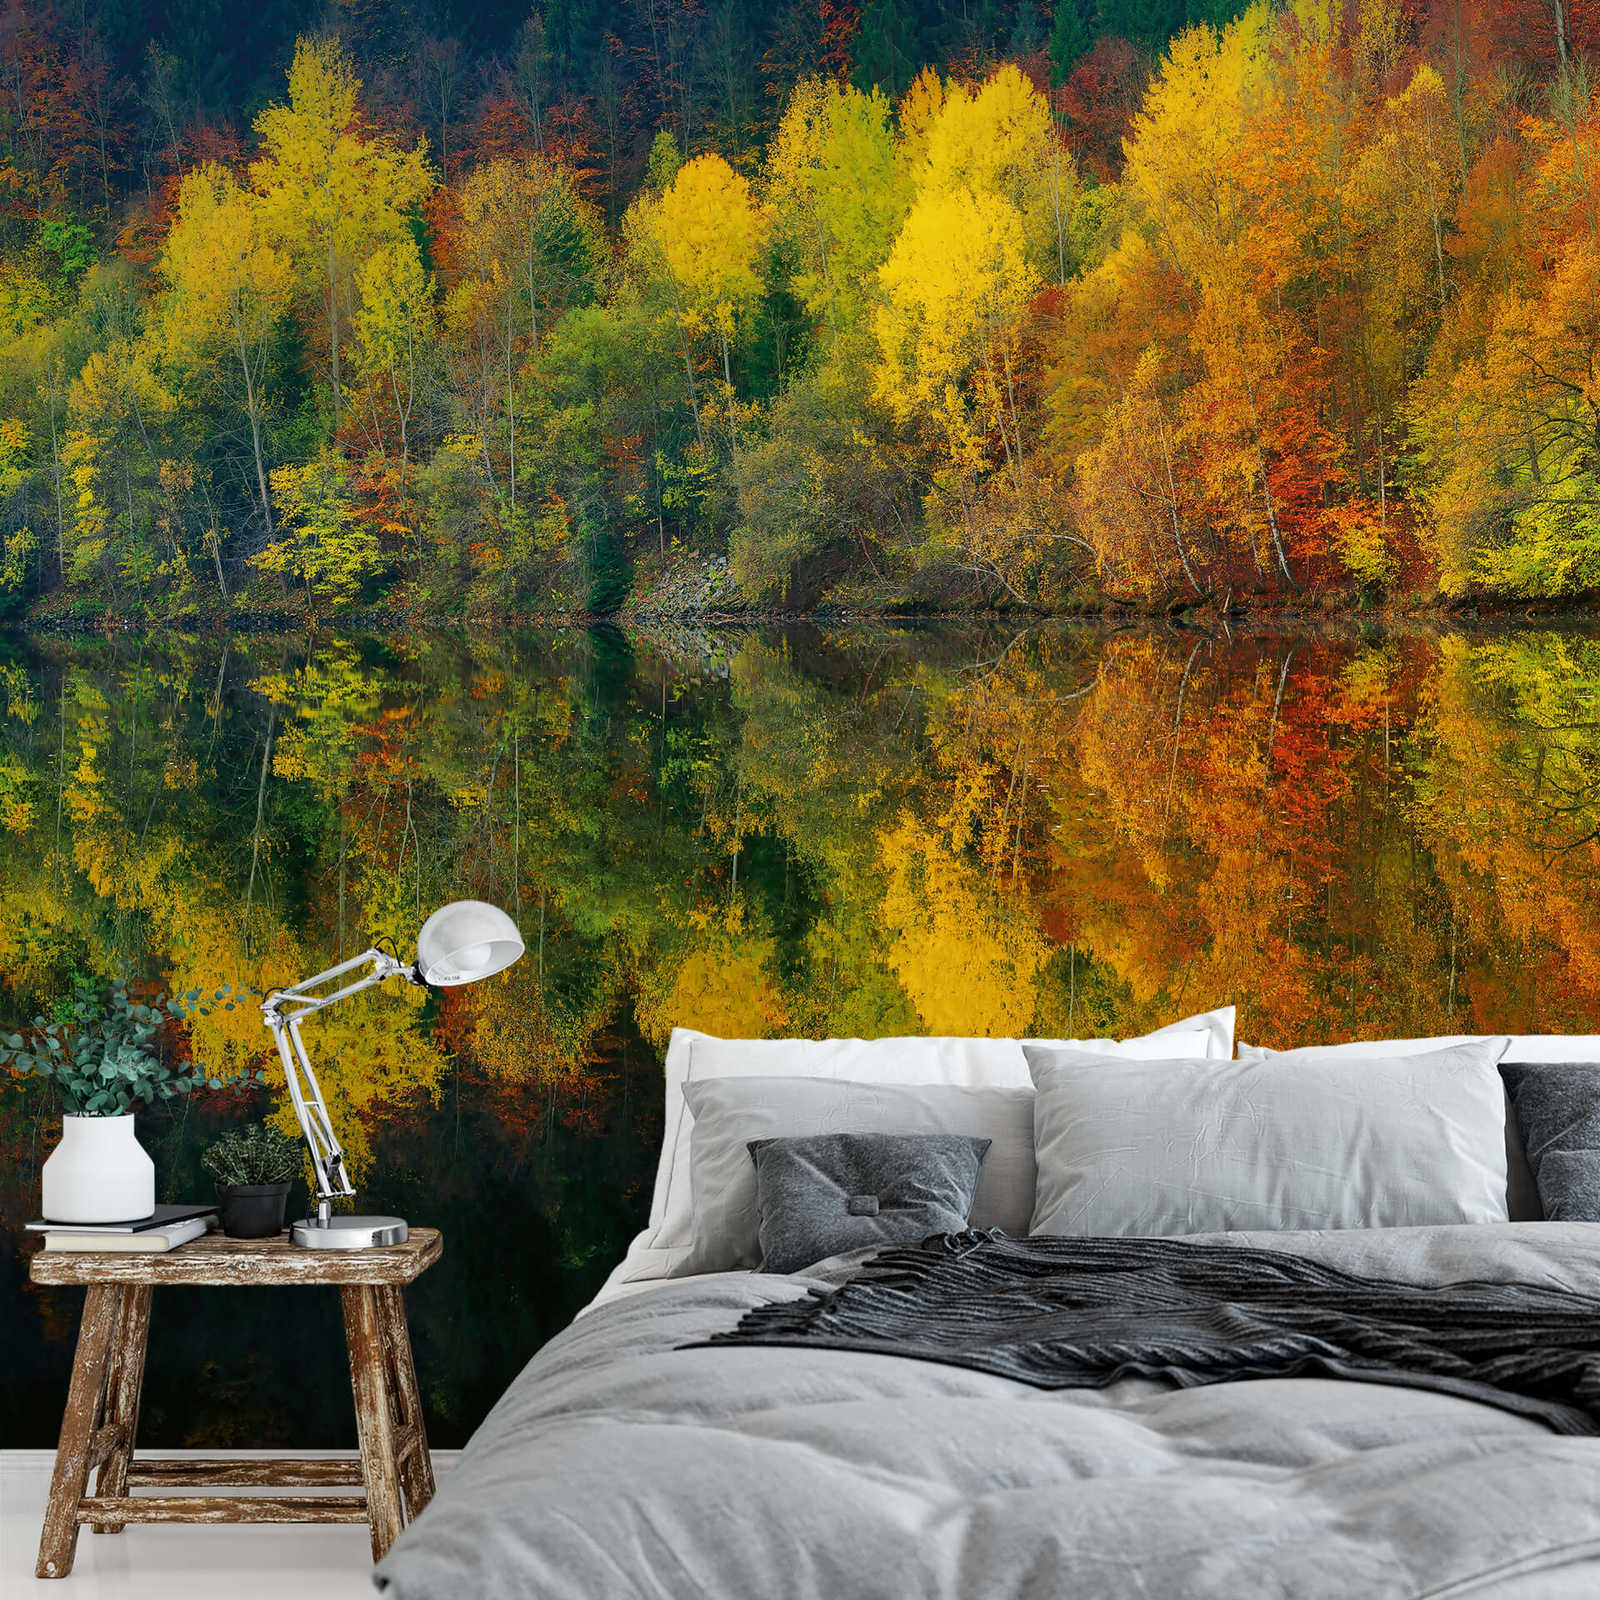             Fototapete Wald am See im Herbst – Gelb, Orange, Grün
        